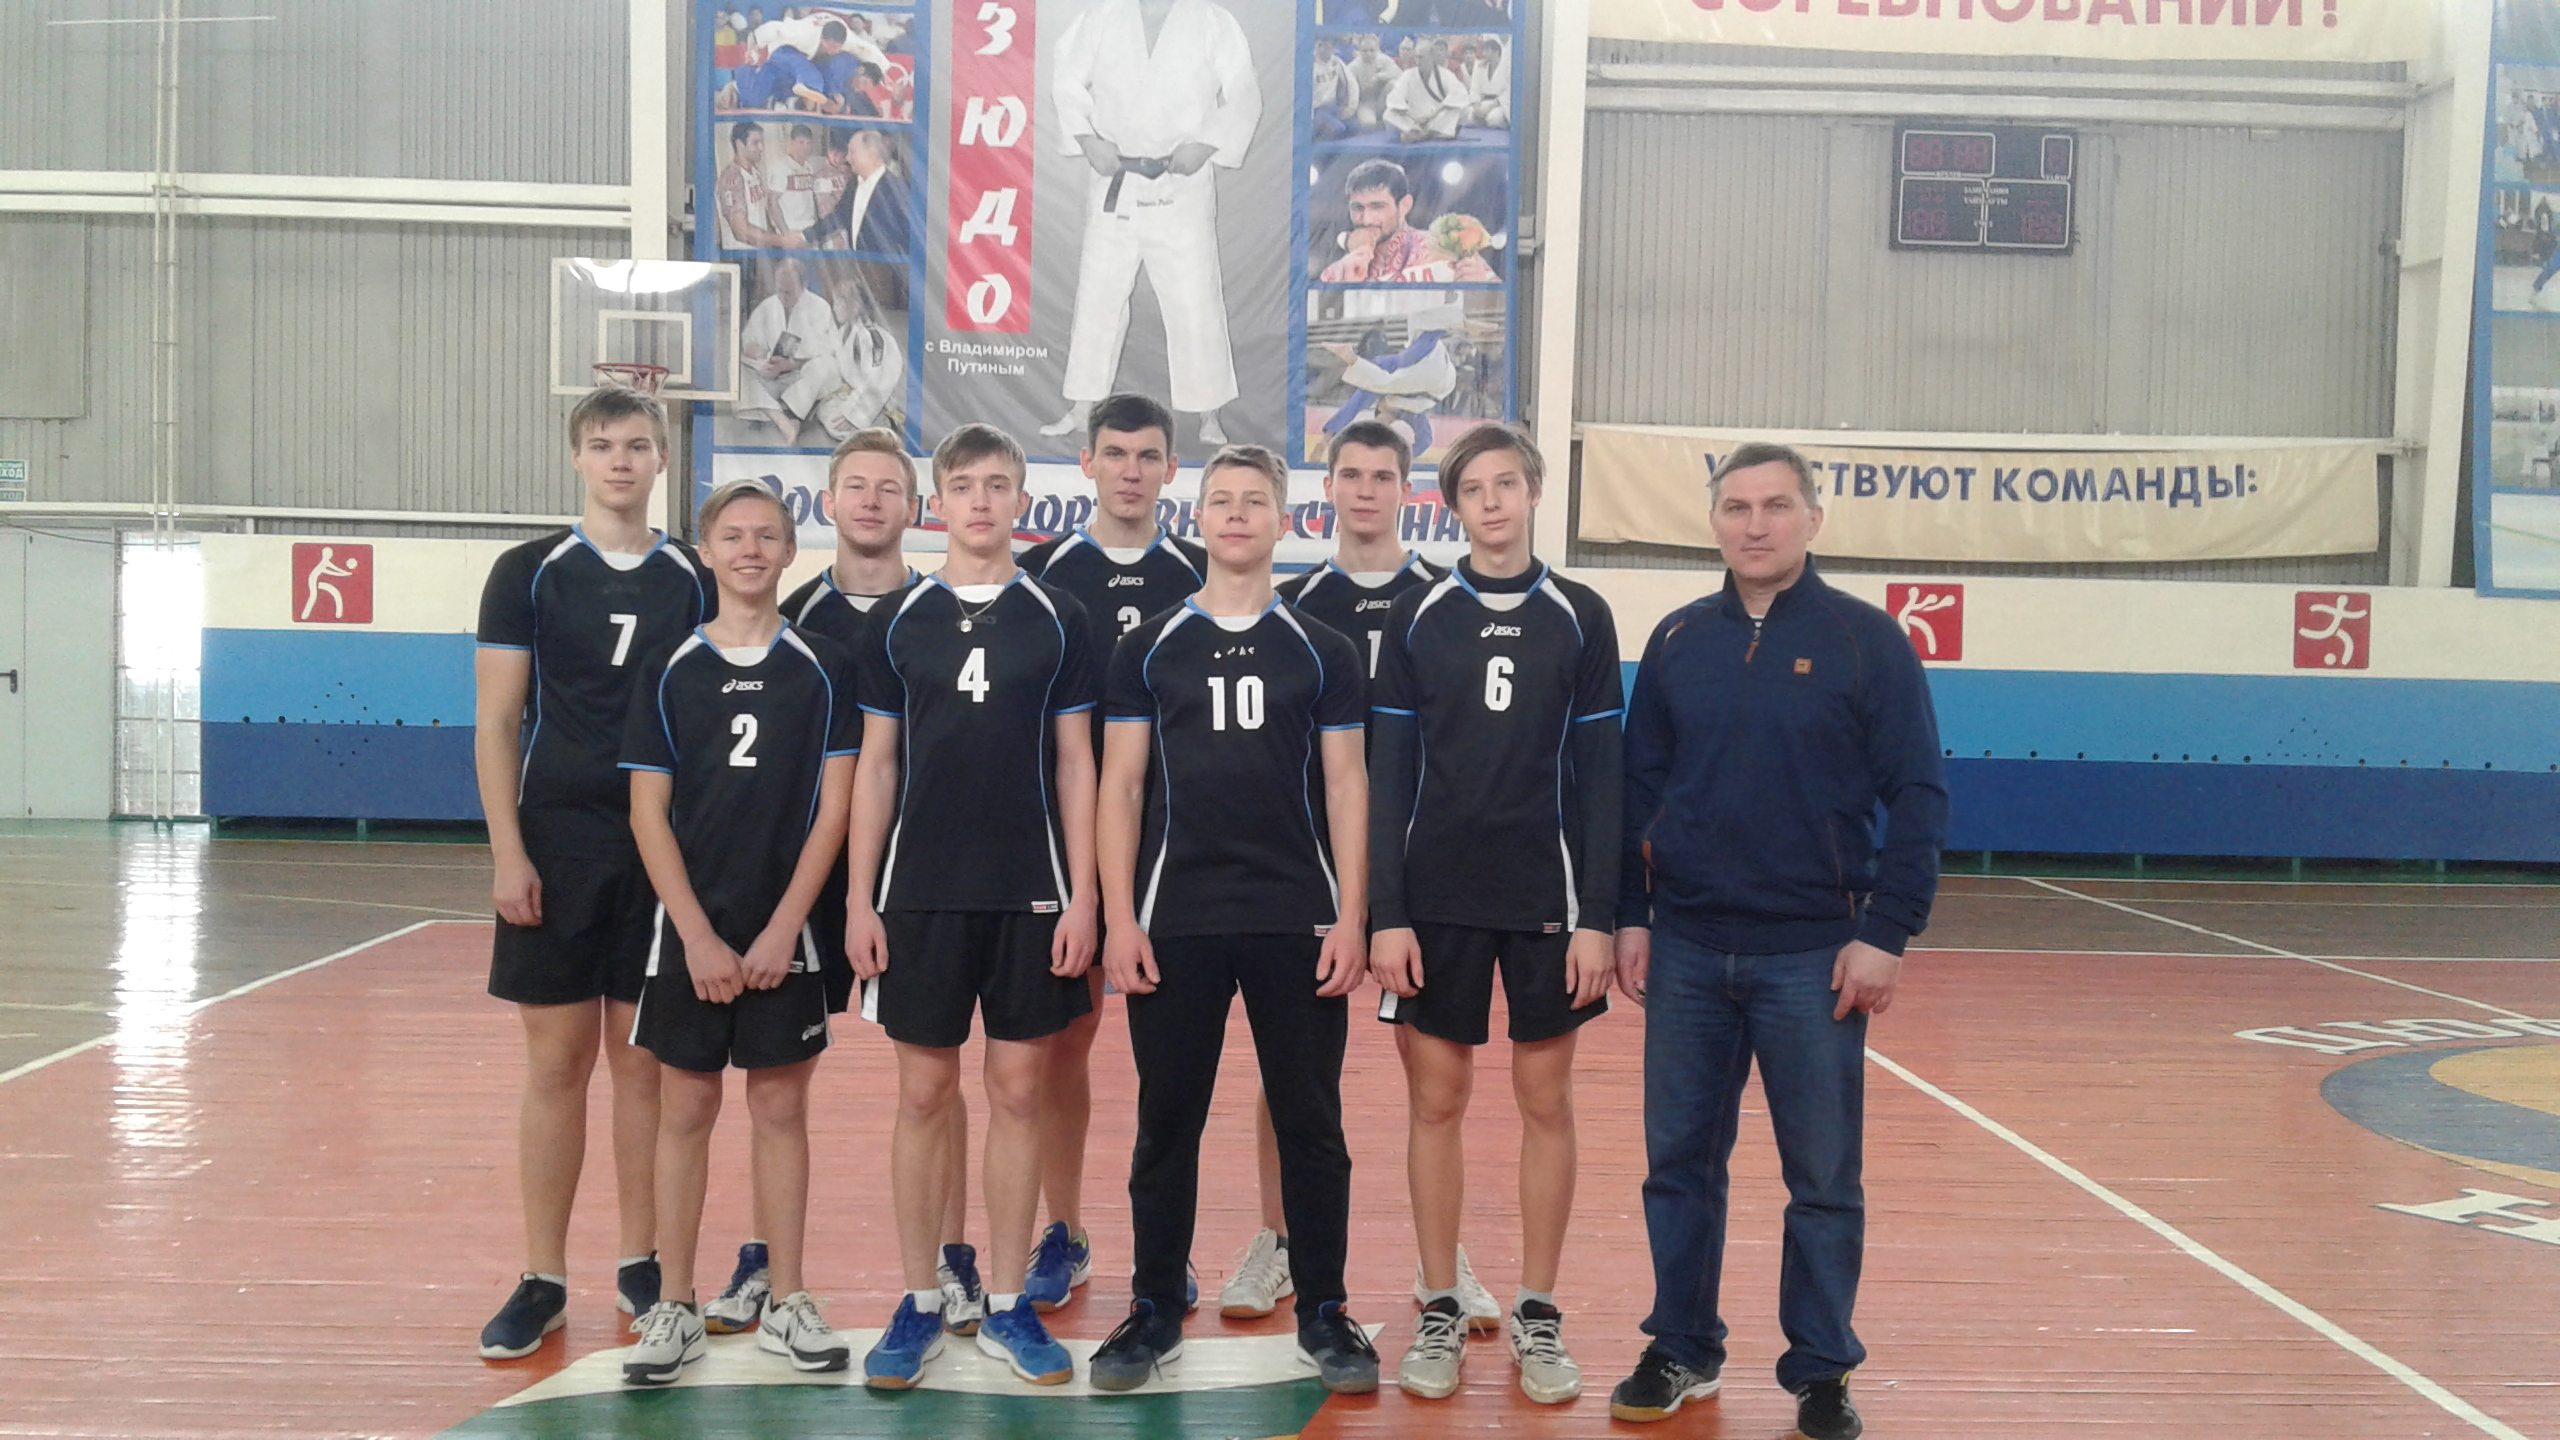 Новозыбковские юноши выиграли Первенство региона по волейболу среди юго-западных команд